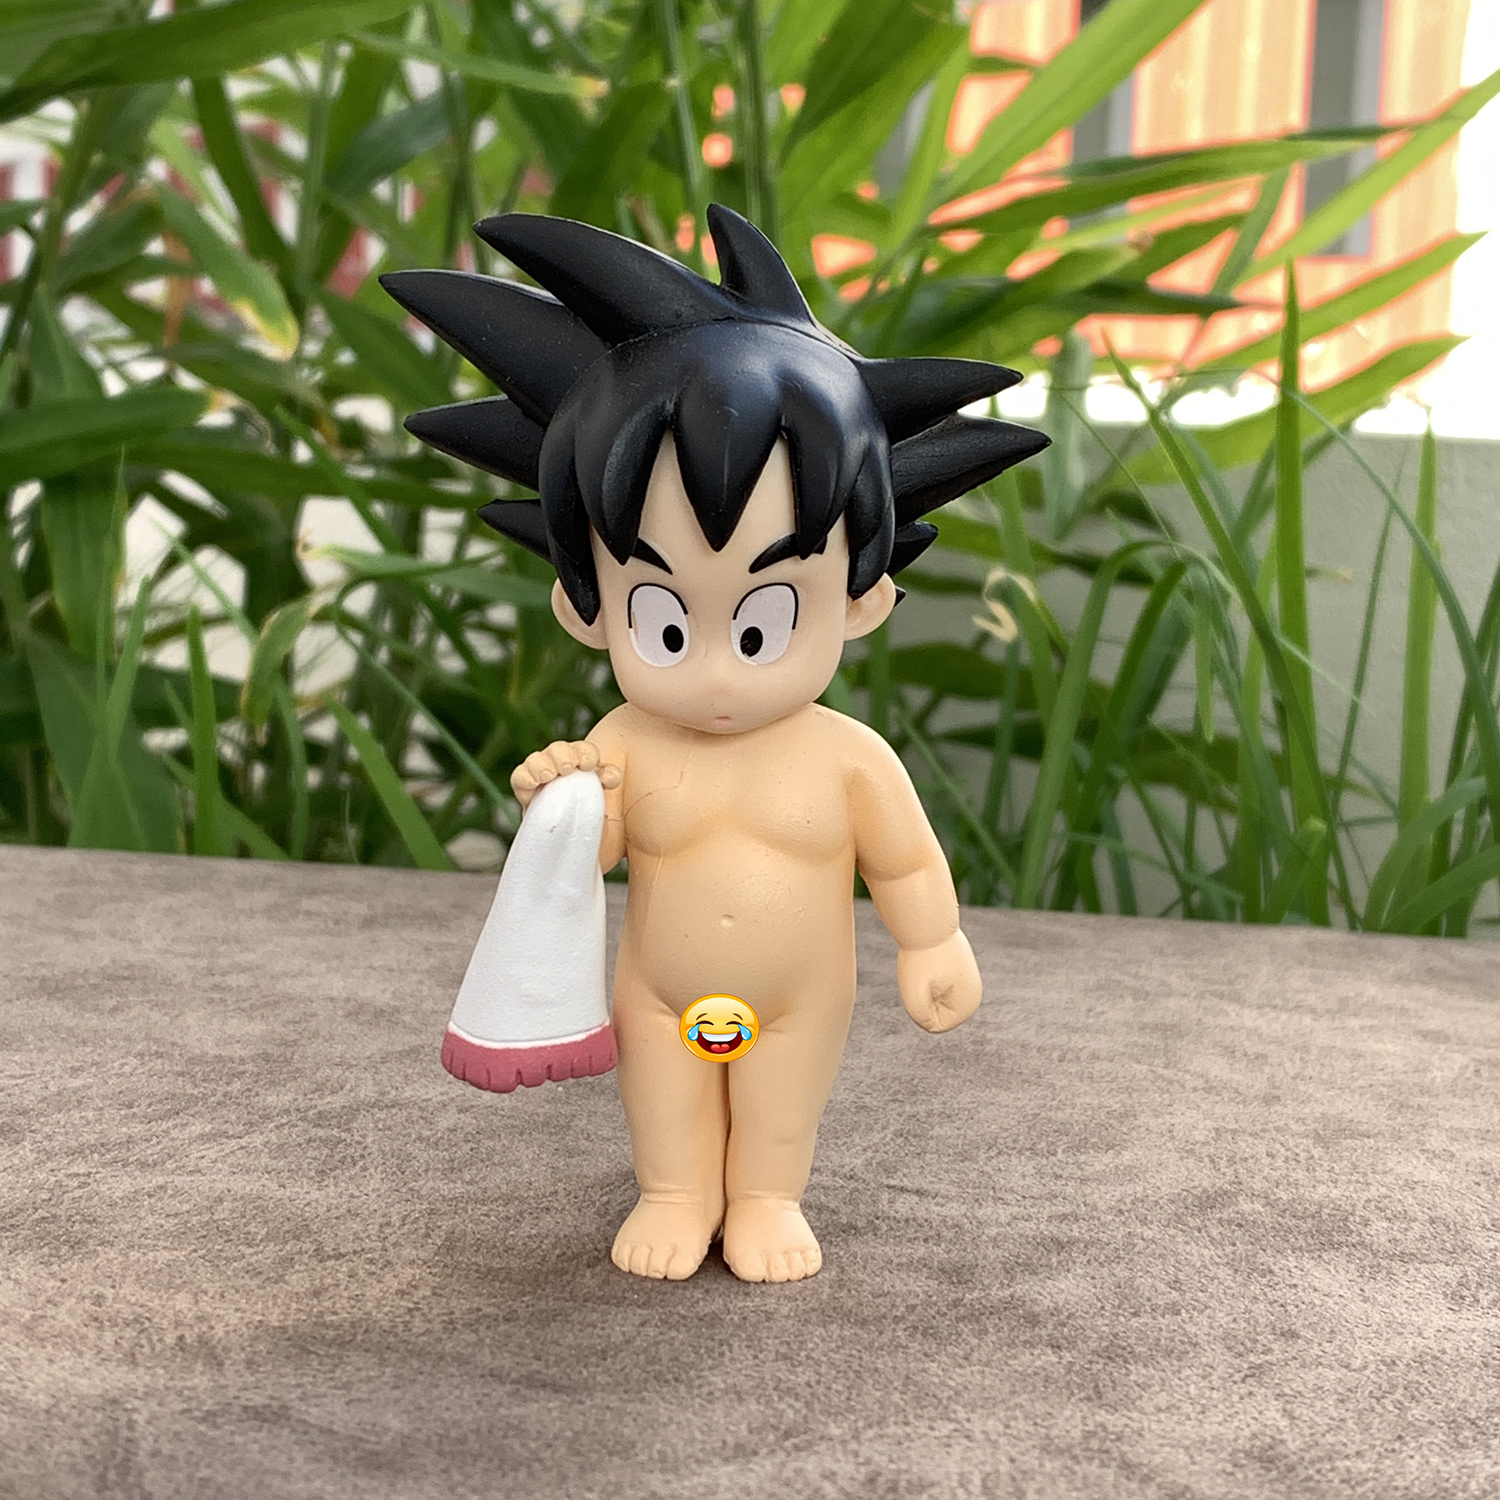 Bạn là fan của Songoku? Bạn sẽ không thể bỏ qua mô hình Songoku đầy chi tiết. Với thiết kế tinh xảo, bạn có thể chiêm ngưỡng một cách chân thật nhất hình ảnh của chiếc áo giáp đầy ấn tượng của Goku.